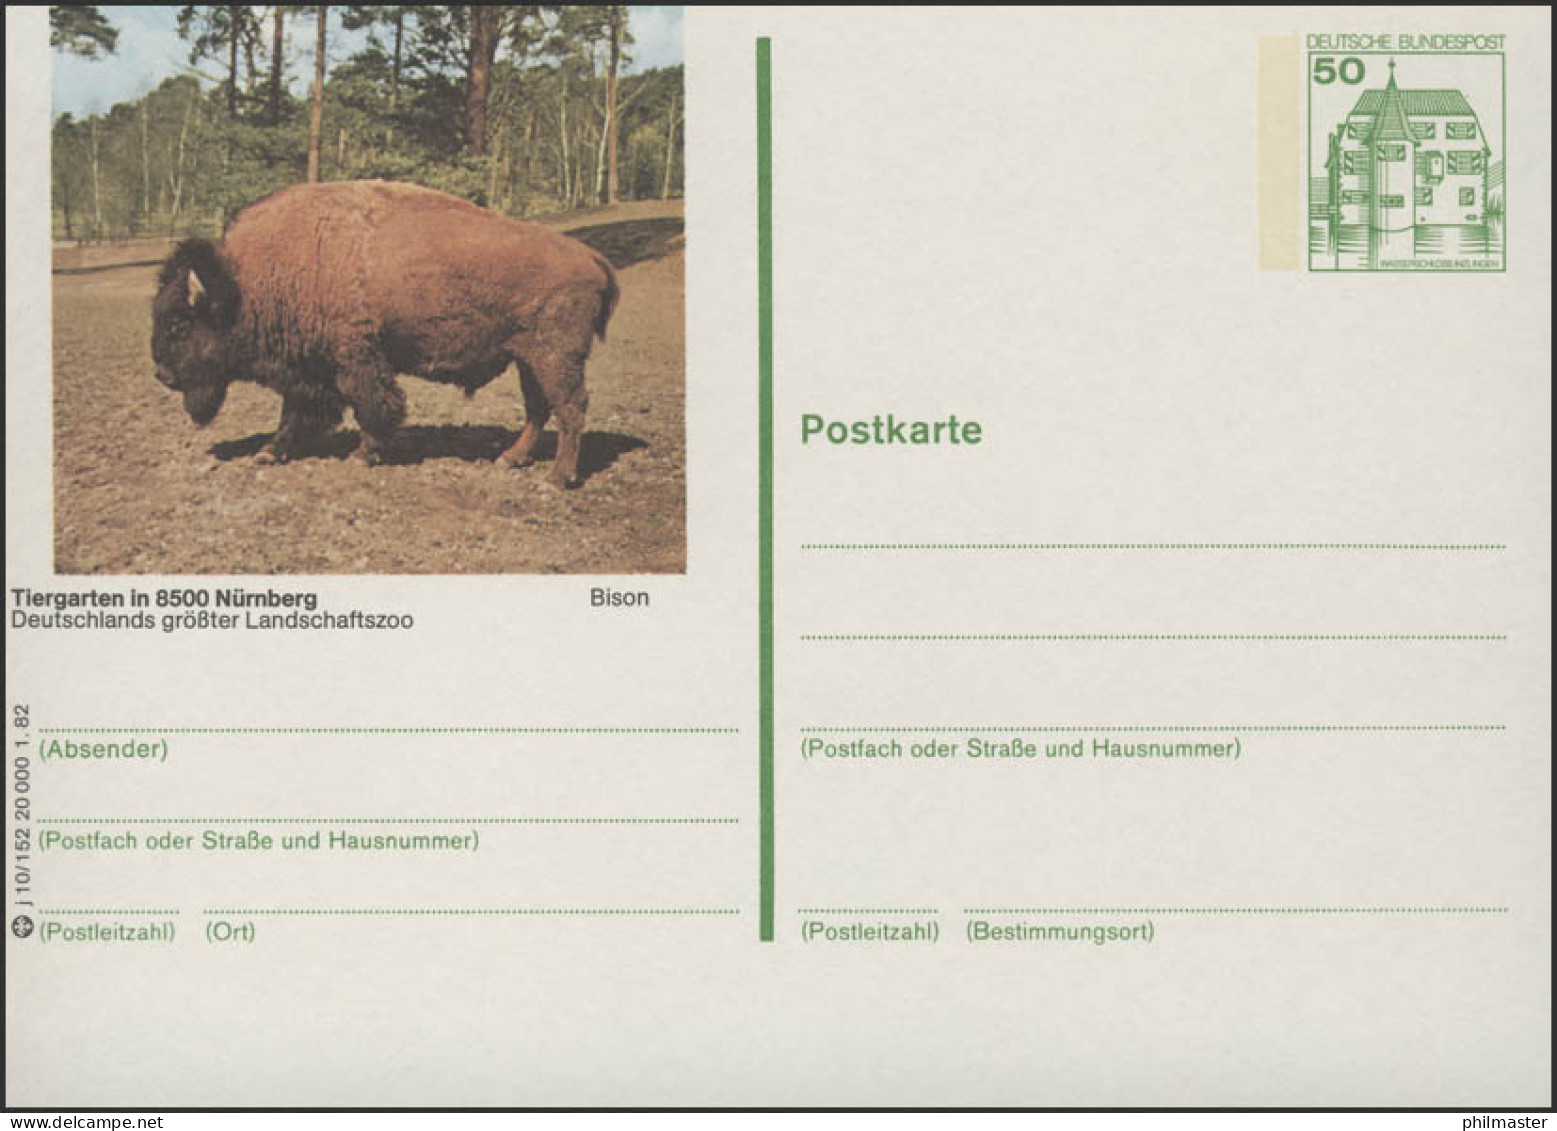 P134-j10/152 8500 Nürnberg - Tiergarten: Bison ** - Illustrated Postcards - Mint